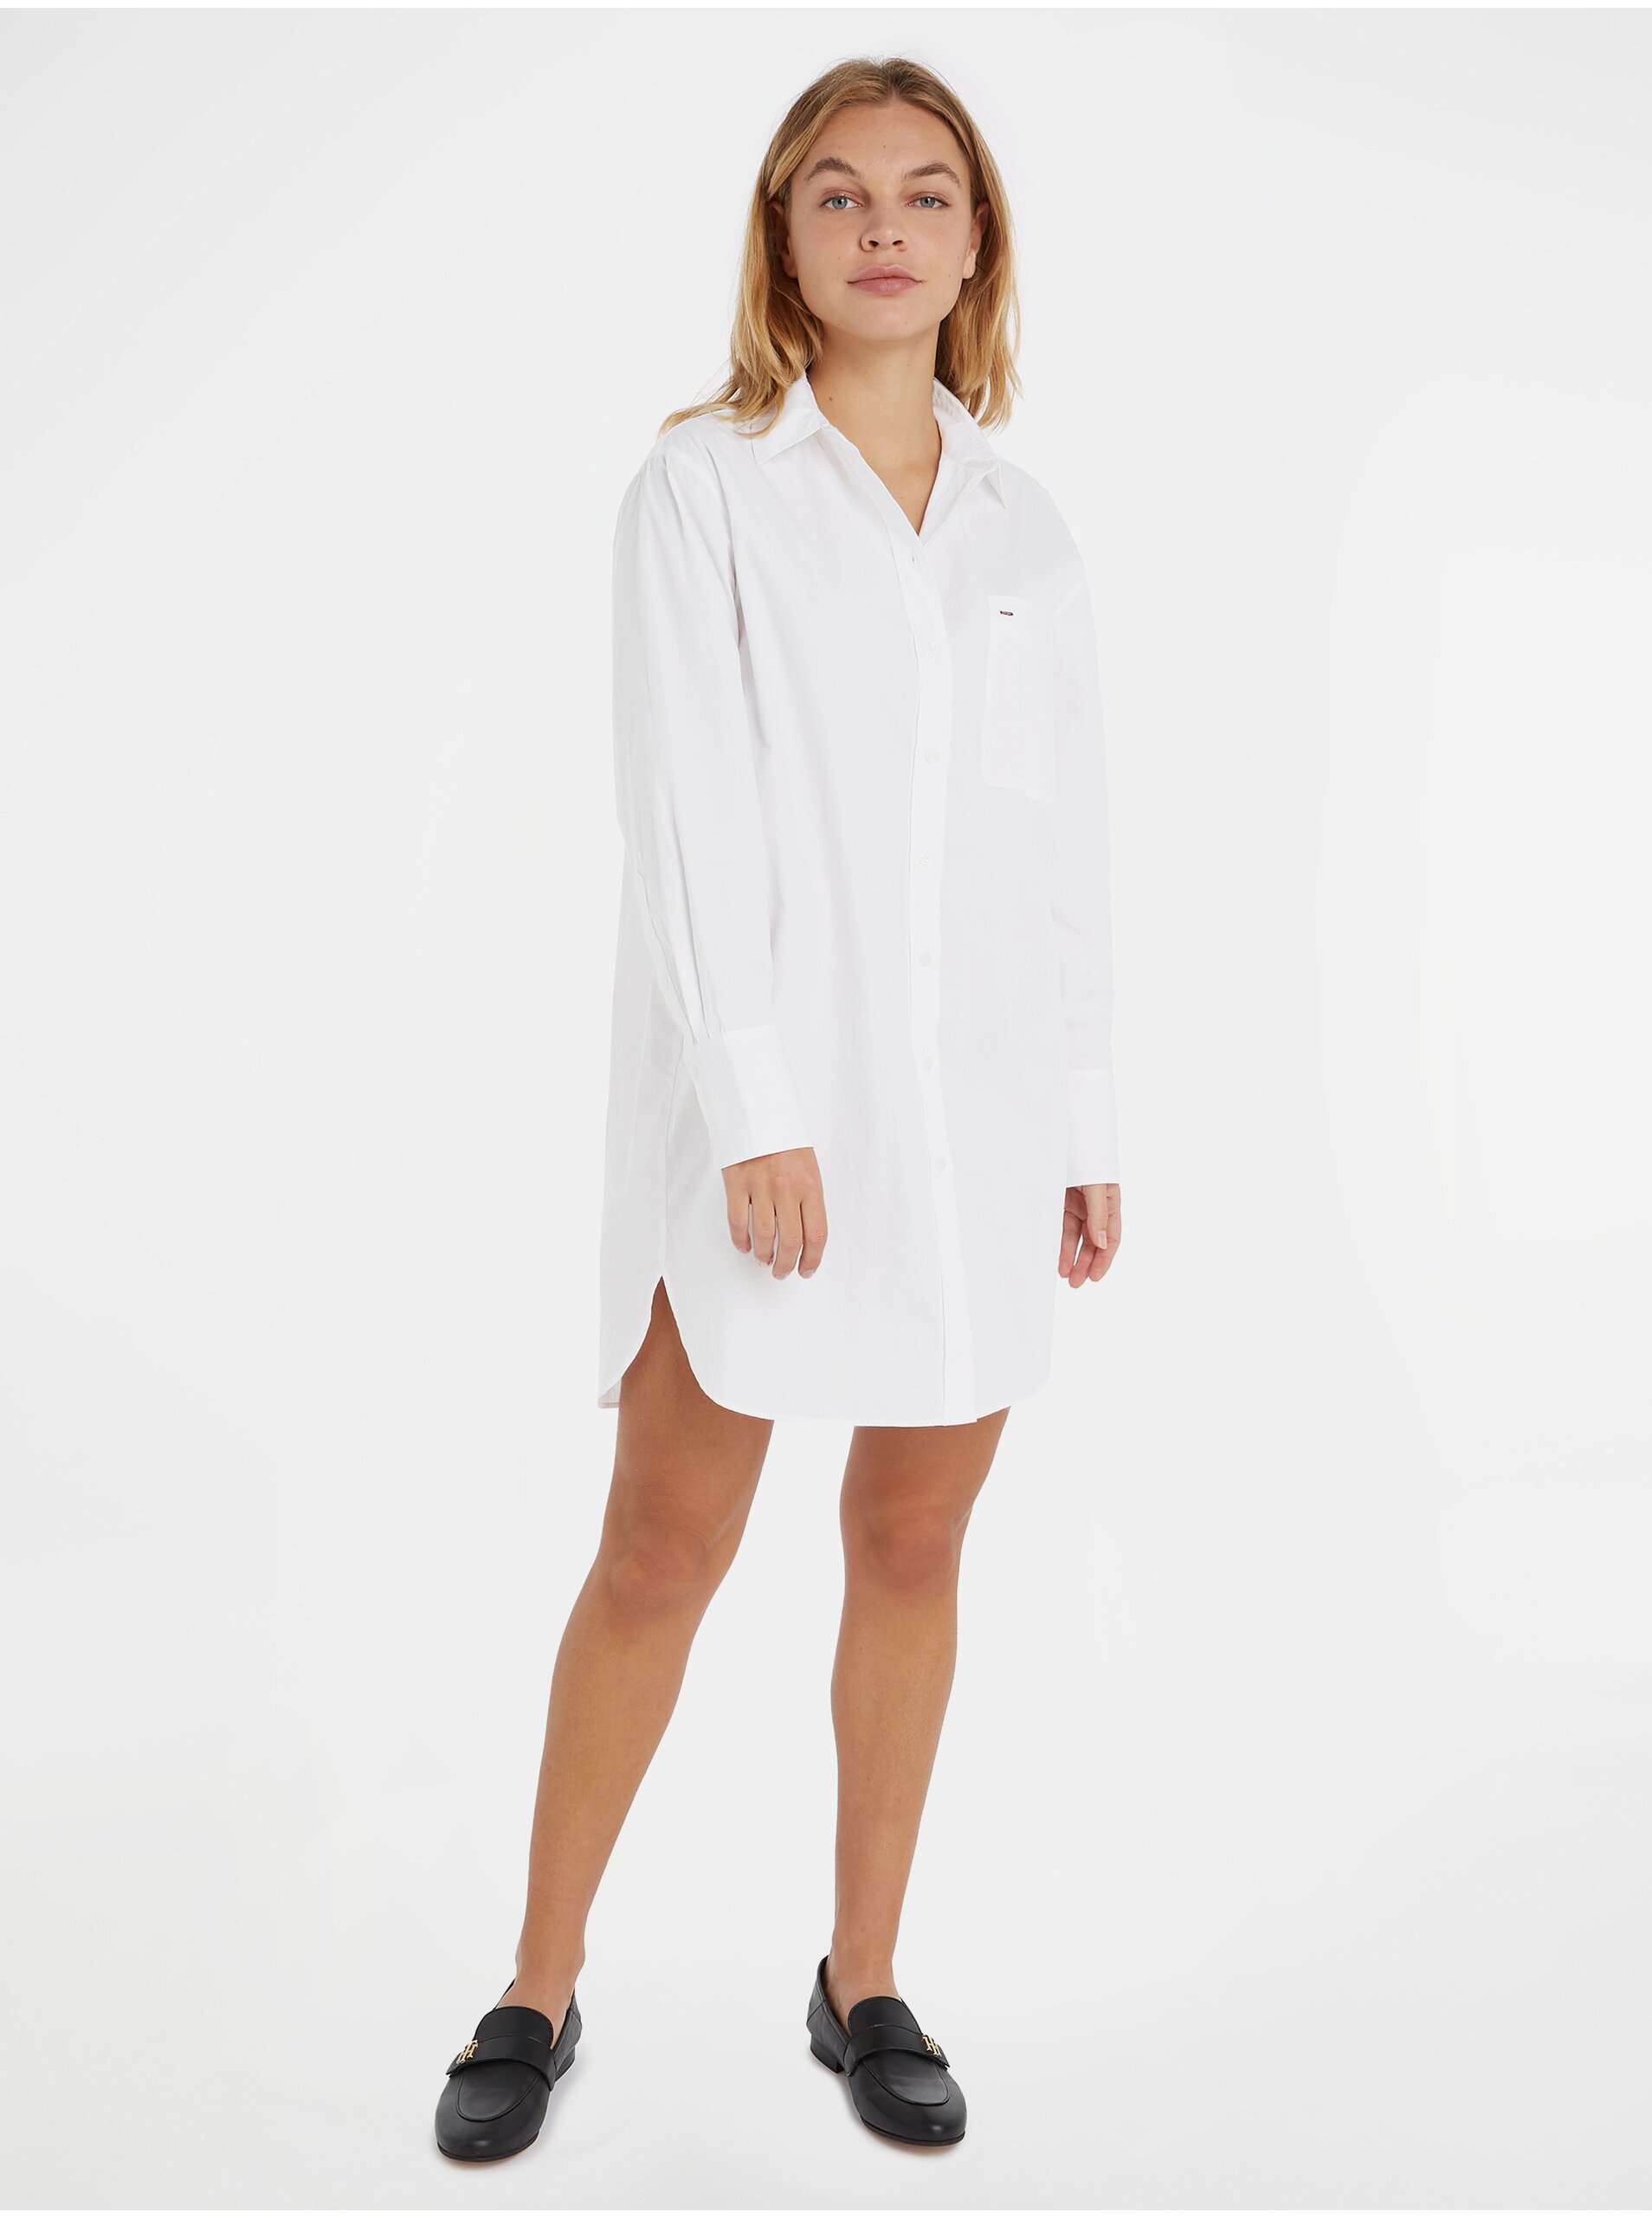 E-shop Bílé dámské košilové šaty Tommy Hilfiger